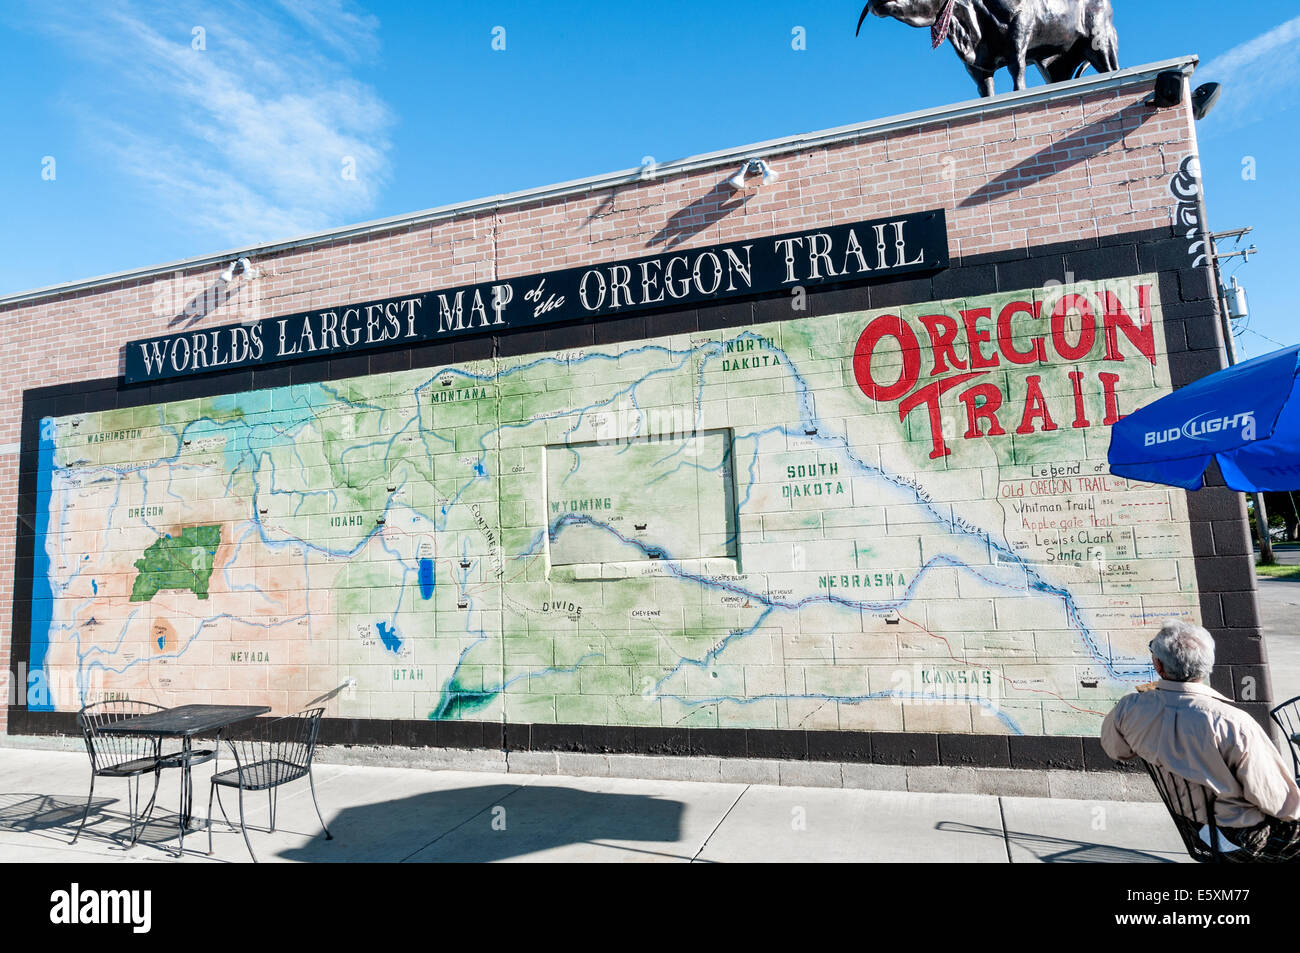 De l'Oregon, Baker City, New York's chariot couvert, piscine store and deli, mural de la carte Banque D'Images